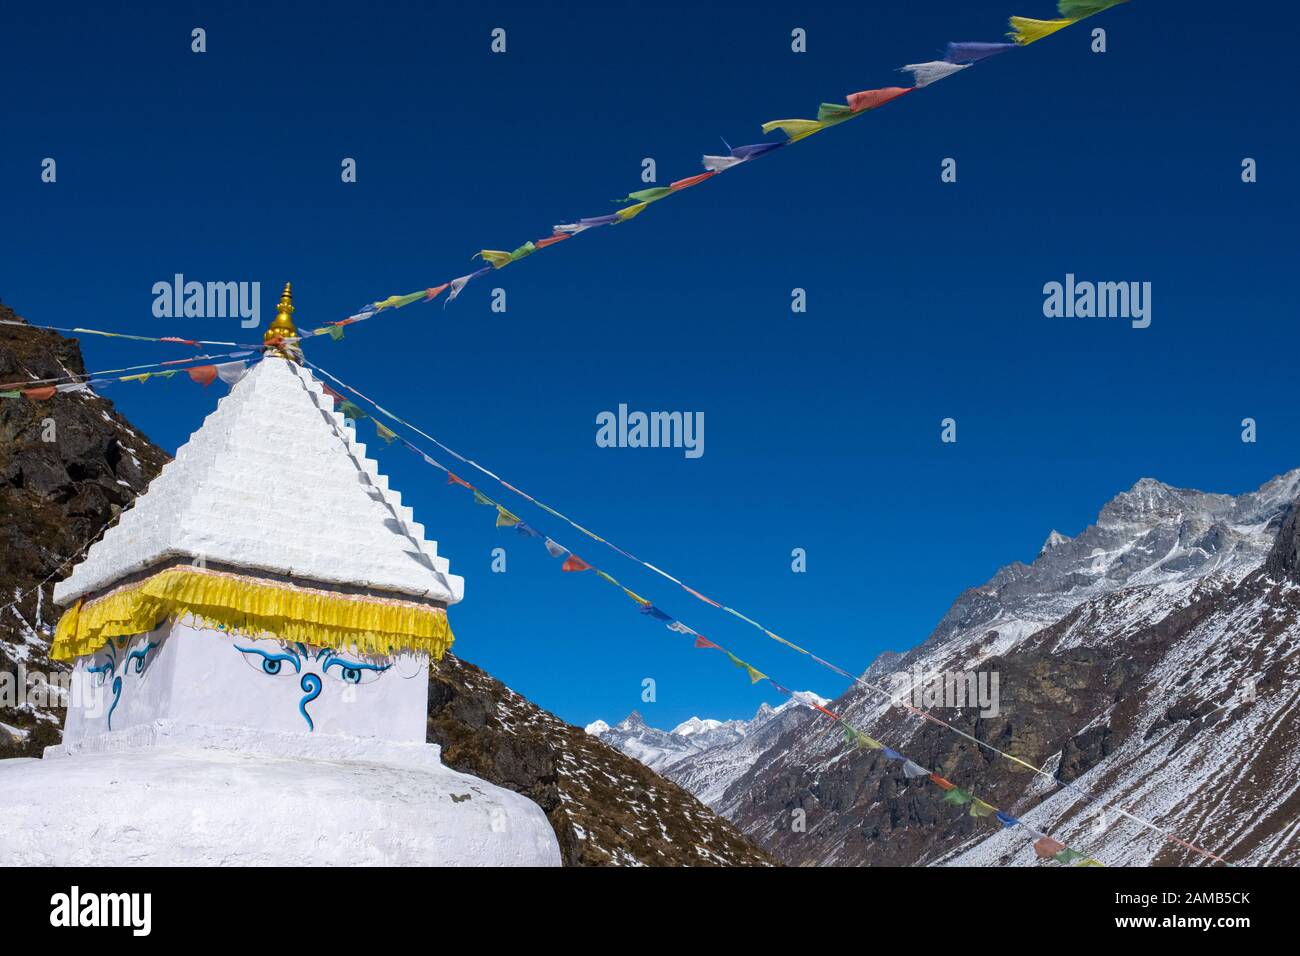 Bouddhiste Chorten / Stupa / Sanctuaire avec drapeaux de prière et tous les yeux de voir, Népal Himalaya Banque D'Images